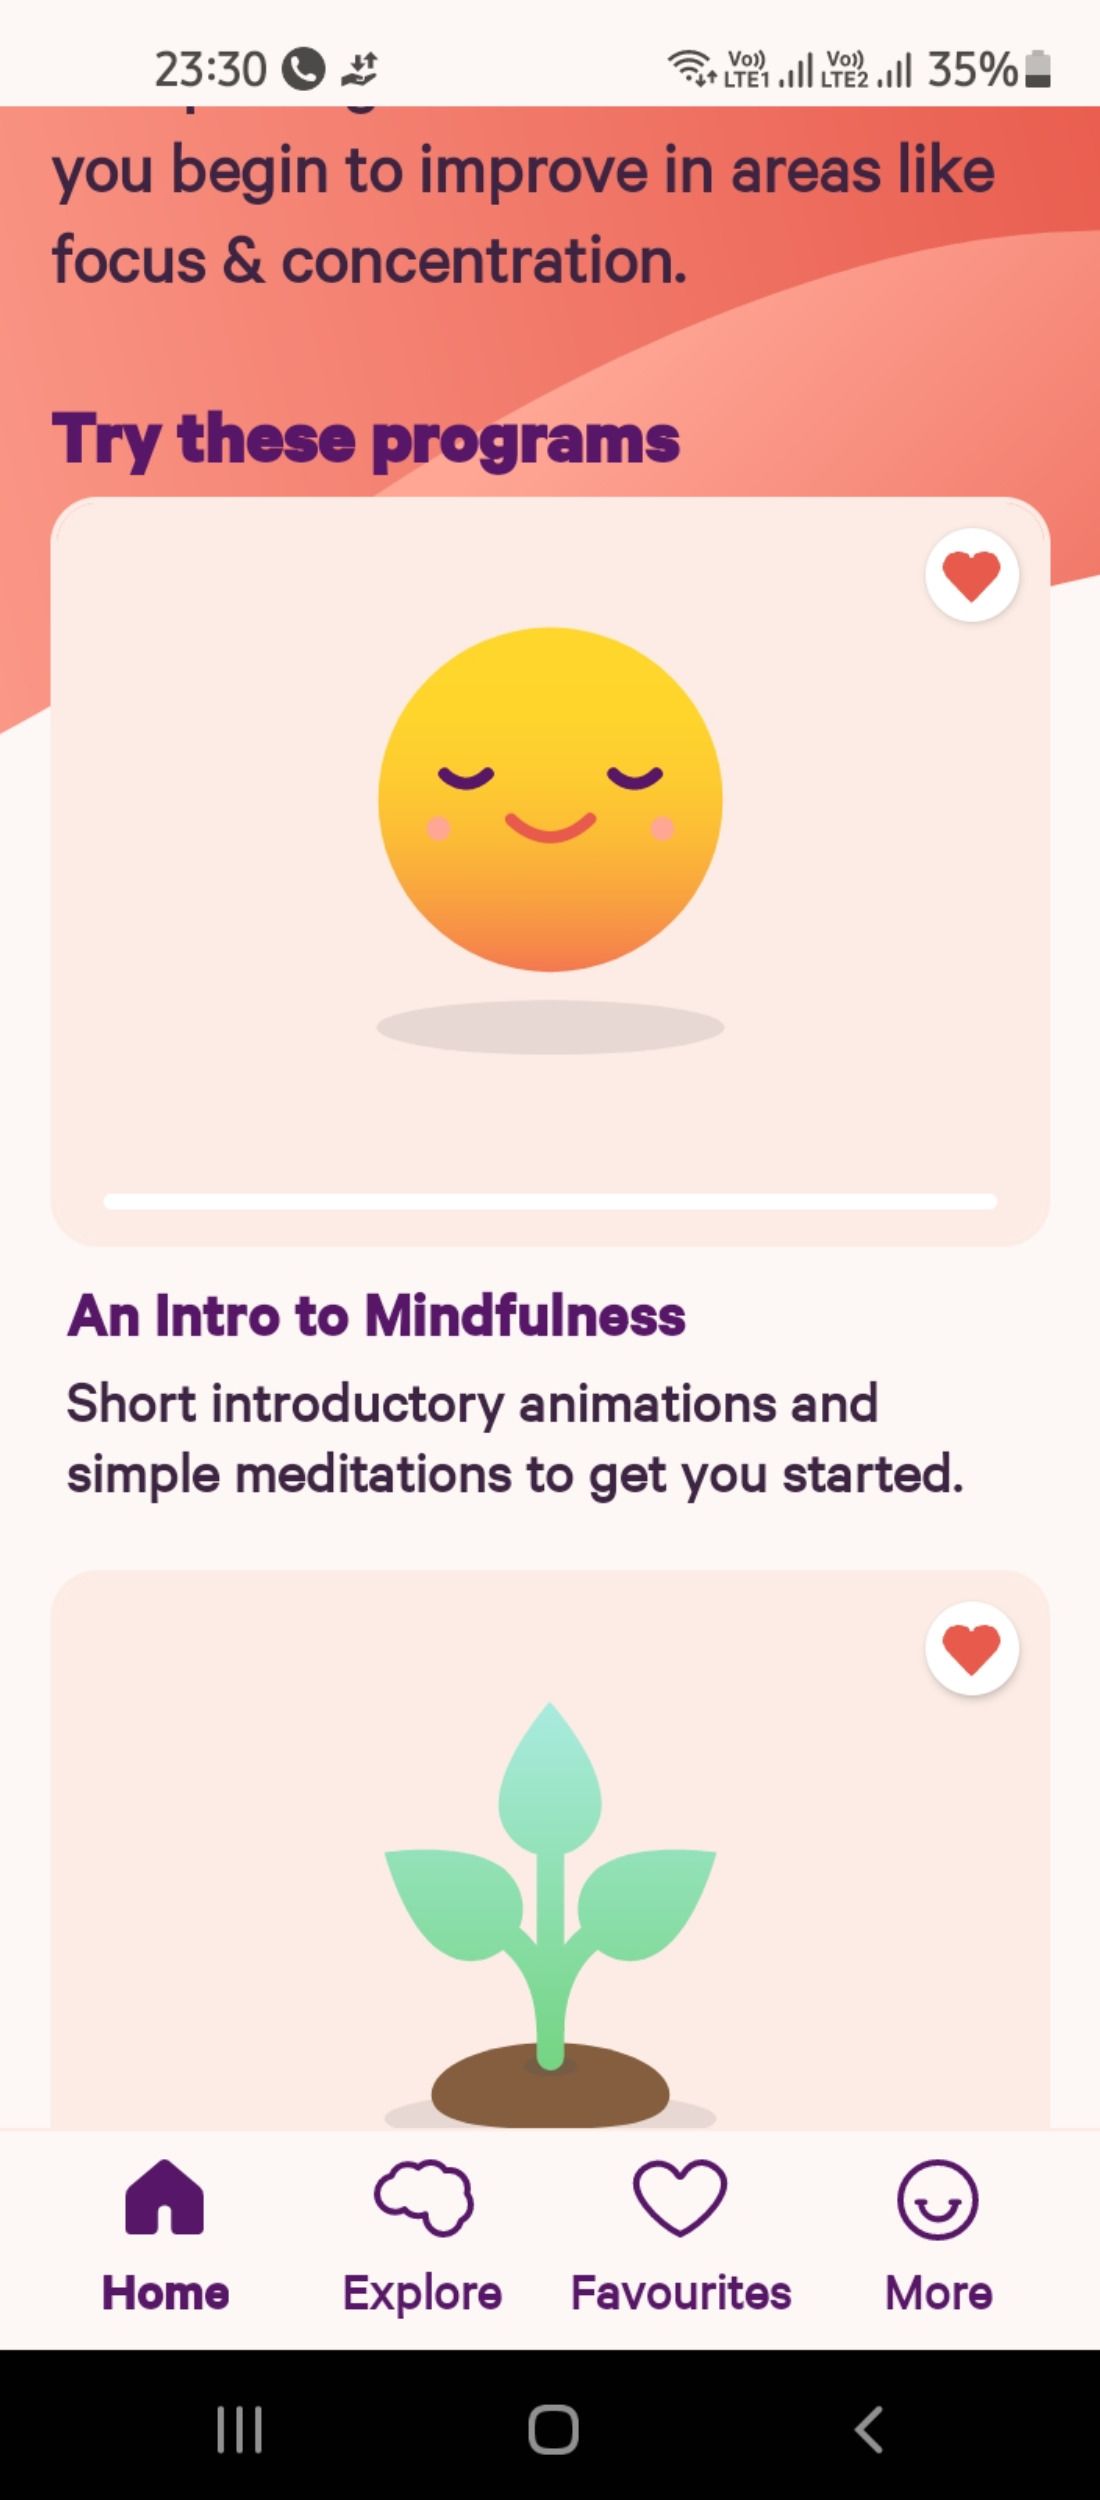 Meditation programs in Smiling Mind app